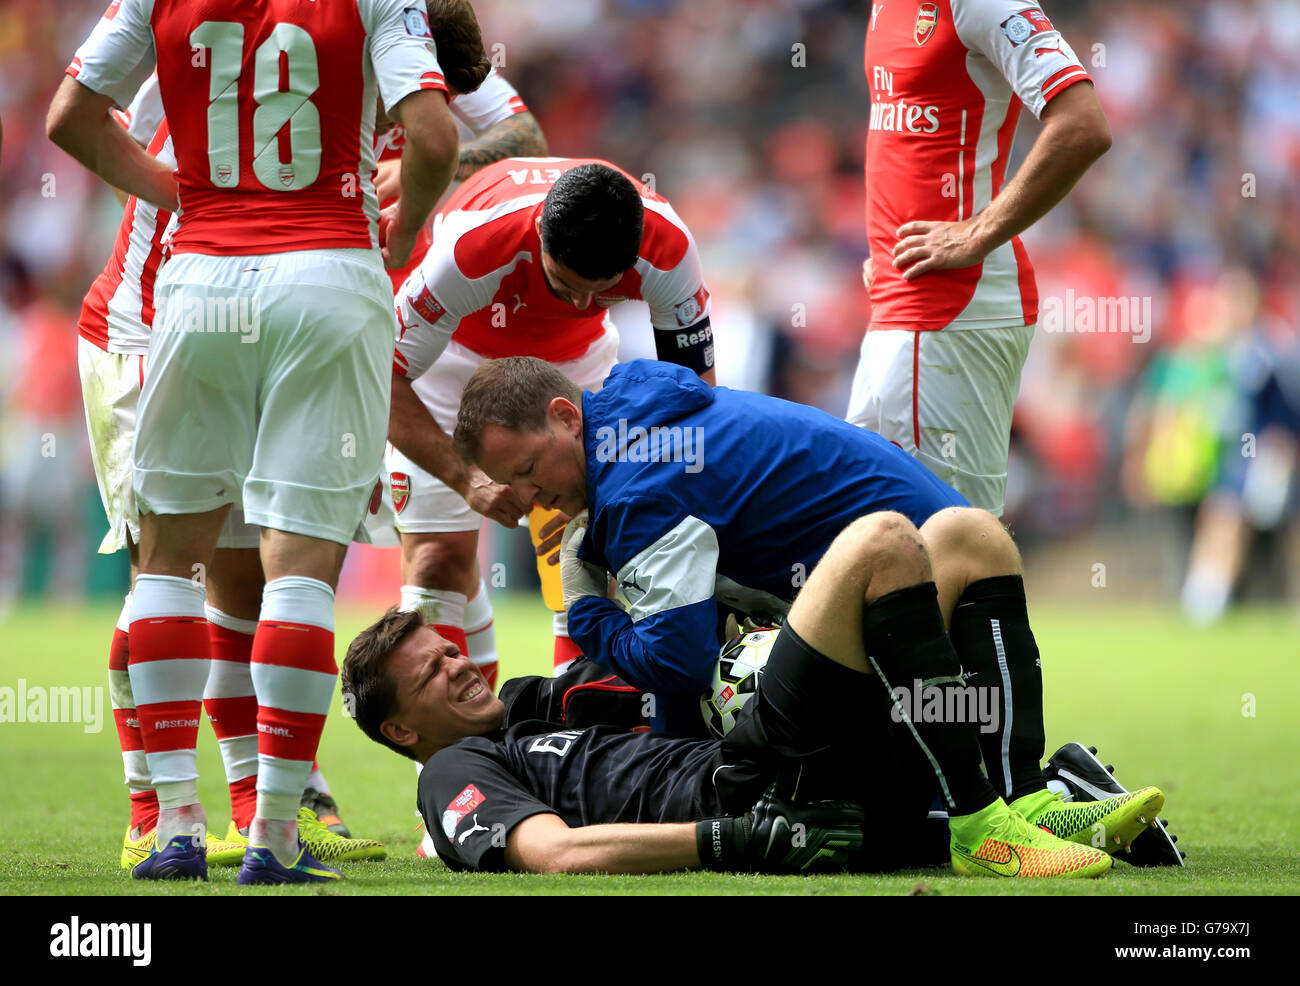 Fútbol - Escudo comunitario - Arsenal contra Manchester City - Estadio Wembley. El portero del Arsenal Wojciech Szczesny es tratado después de una lesión por el fiiso del Arsenal Colin Lewin Foto de stock